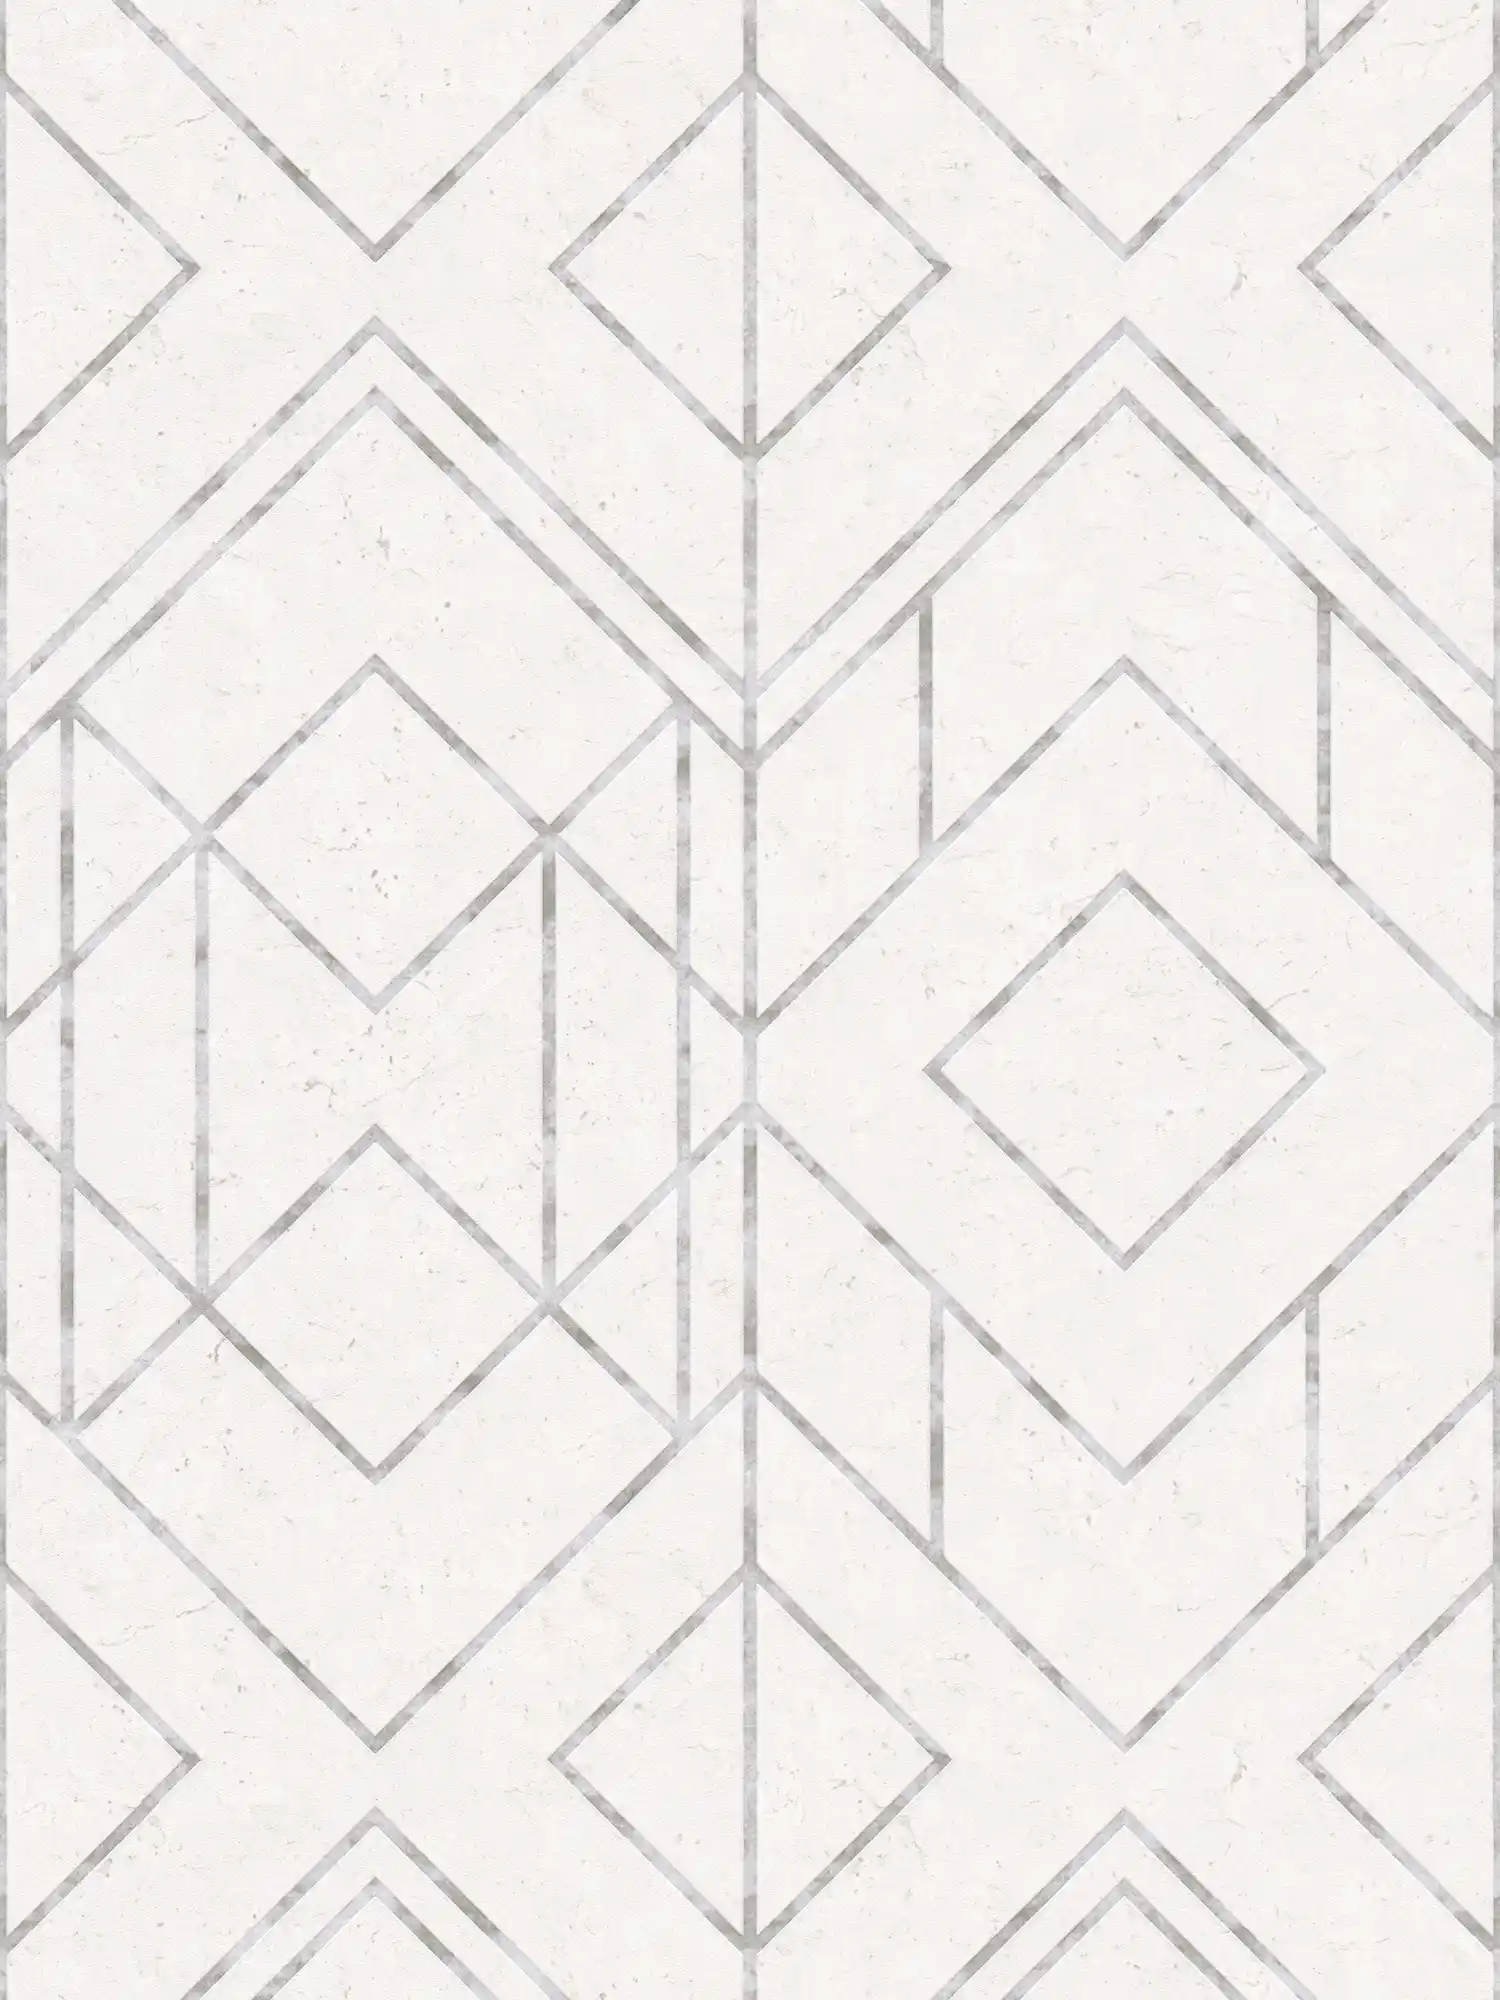 Grafisch patroonbehang met metallic accenten - grijs, metallic, wit
